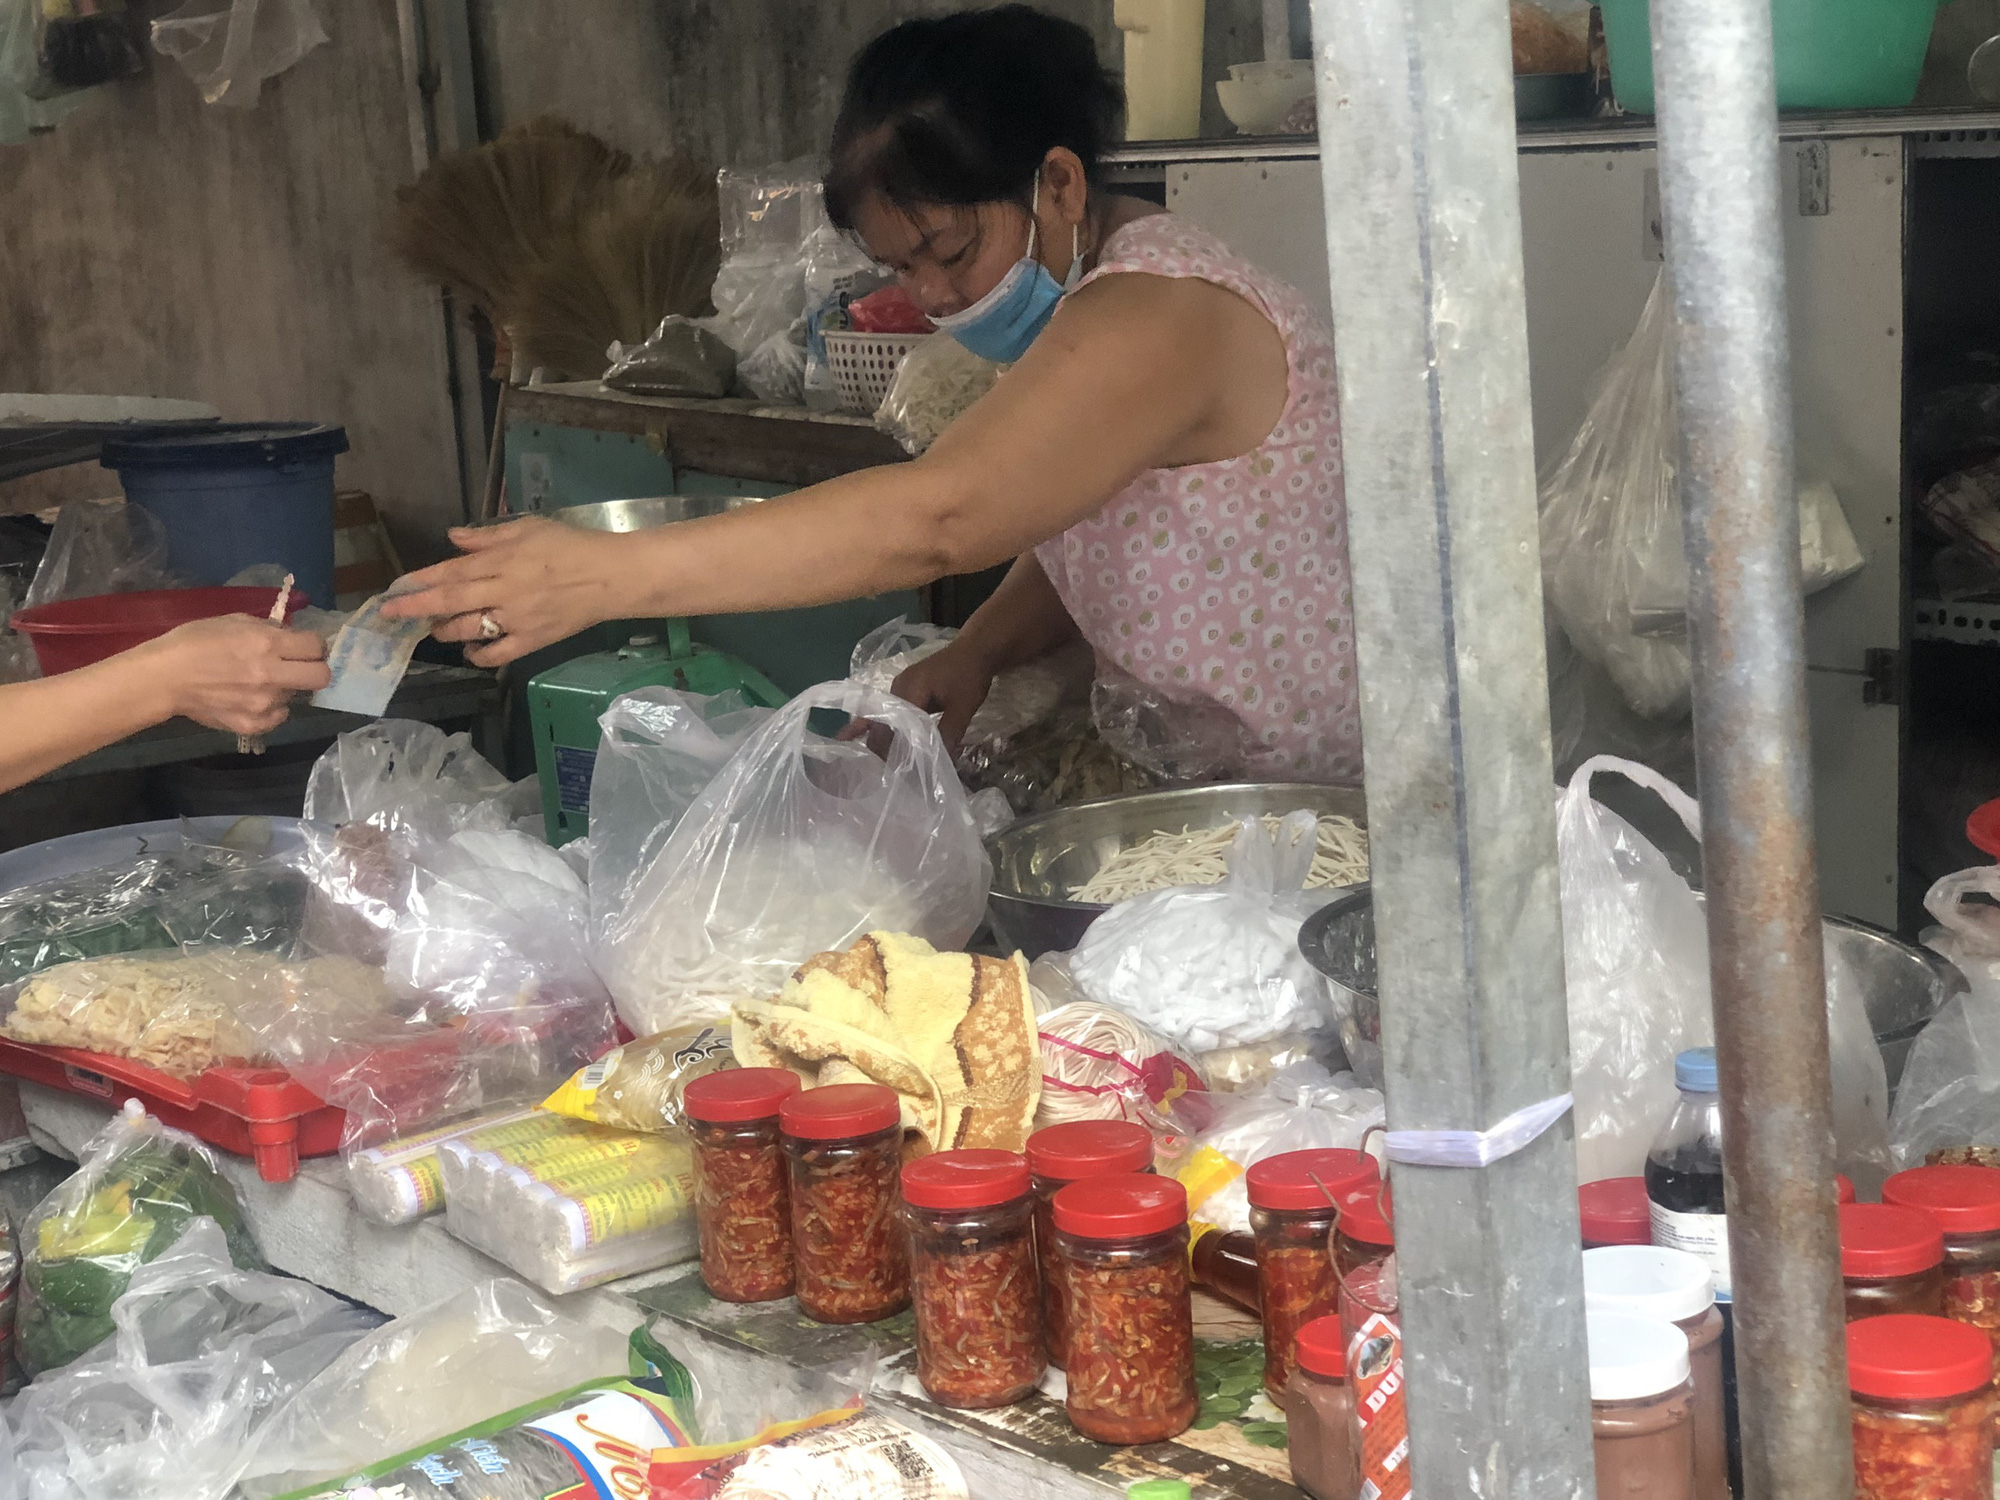 
Ngôi chợ tự phát với những tiếng &quot;mô tê răng rứa&quot; nằm ở vùng ven Sài Gòn - Ảnh 2.